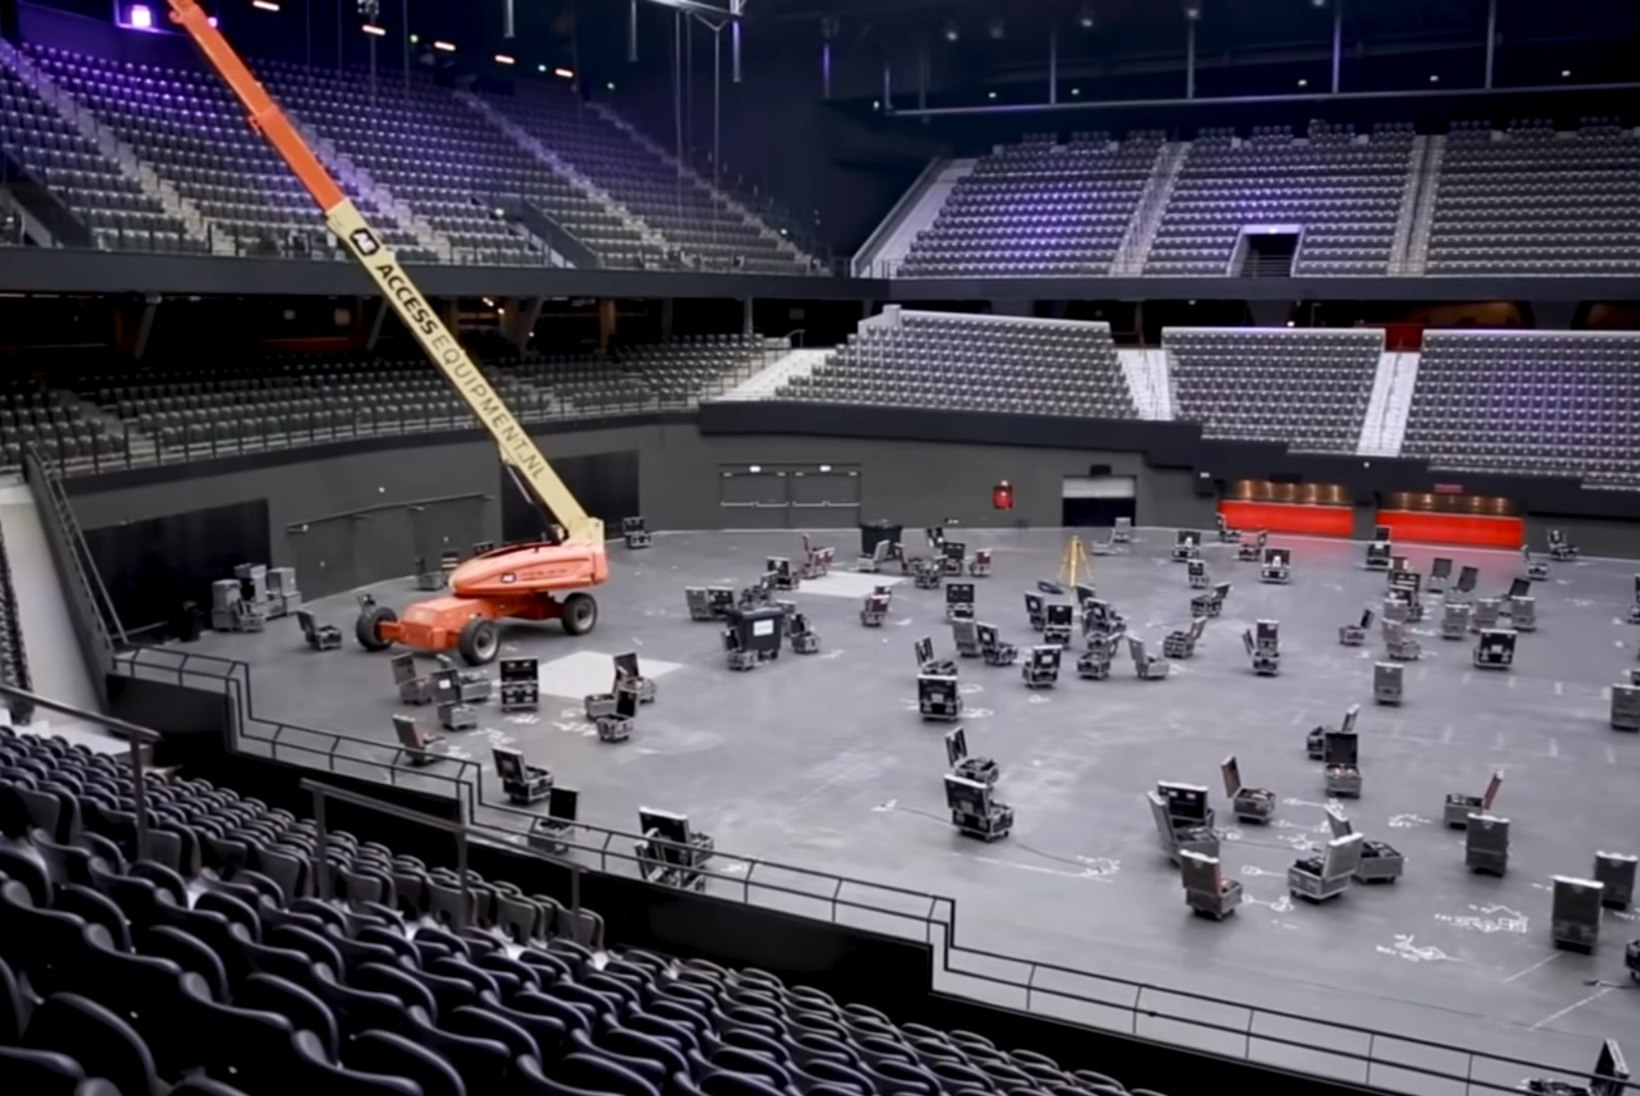 Rotterdamis alustati Eurovisioni lava ehitamisega